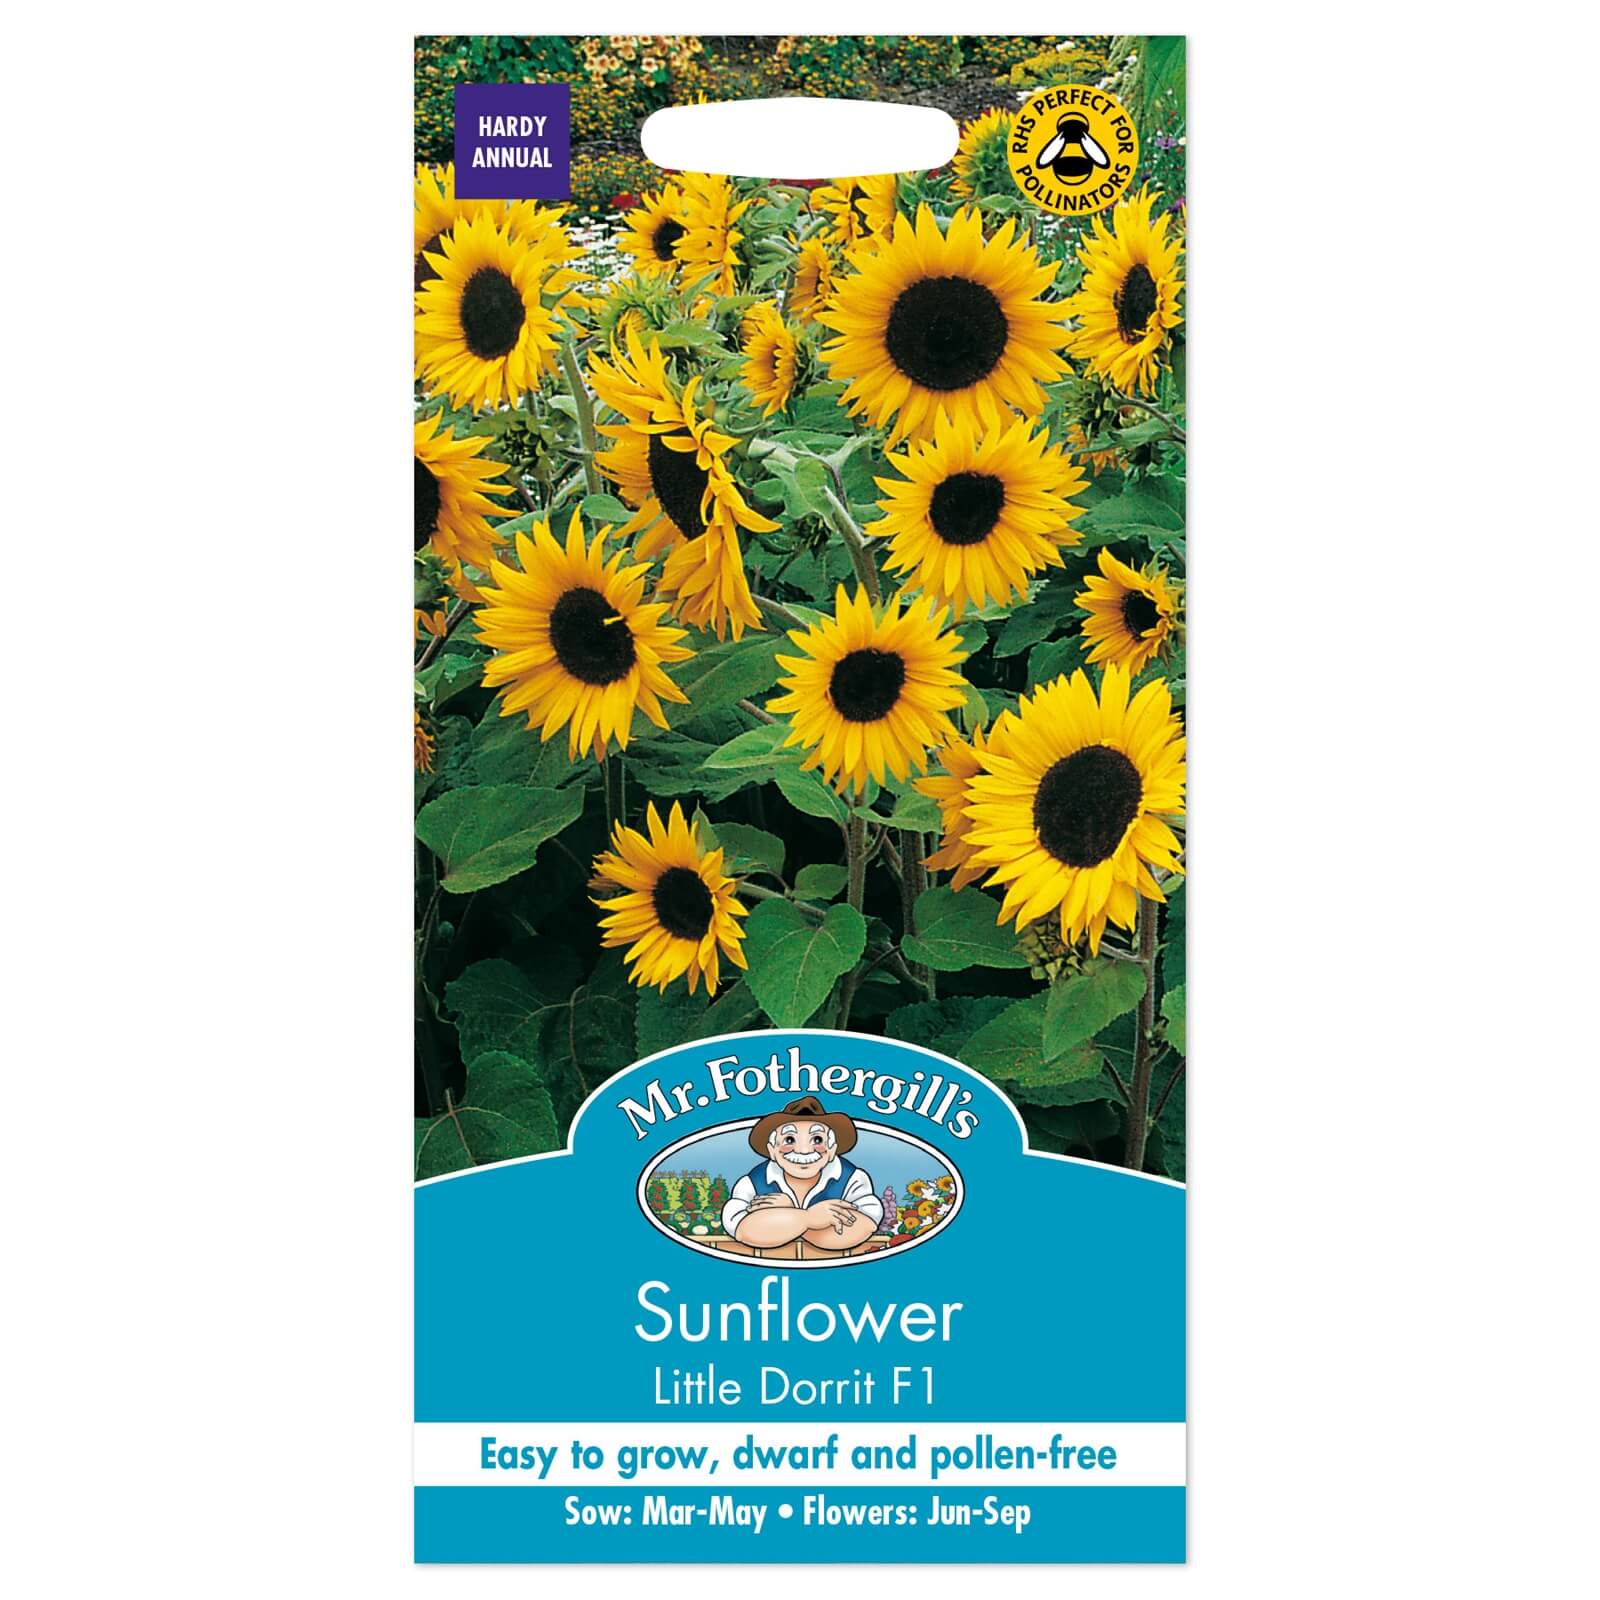 Mr. Fothergill's Sunflower Little Dorrit F1 Seeds